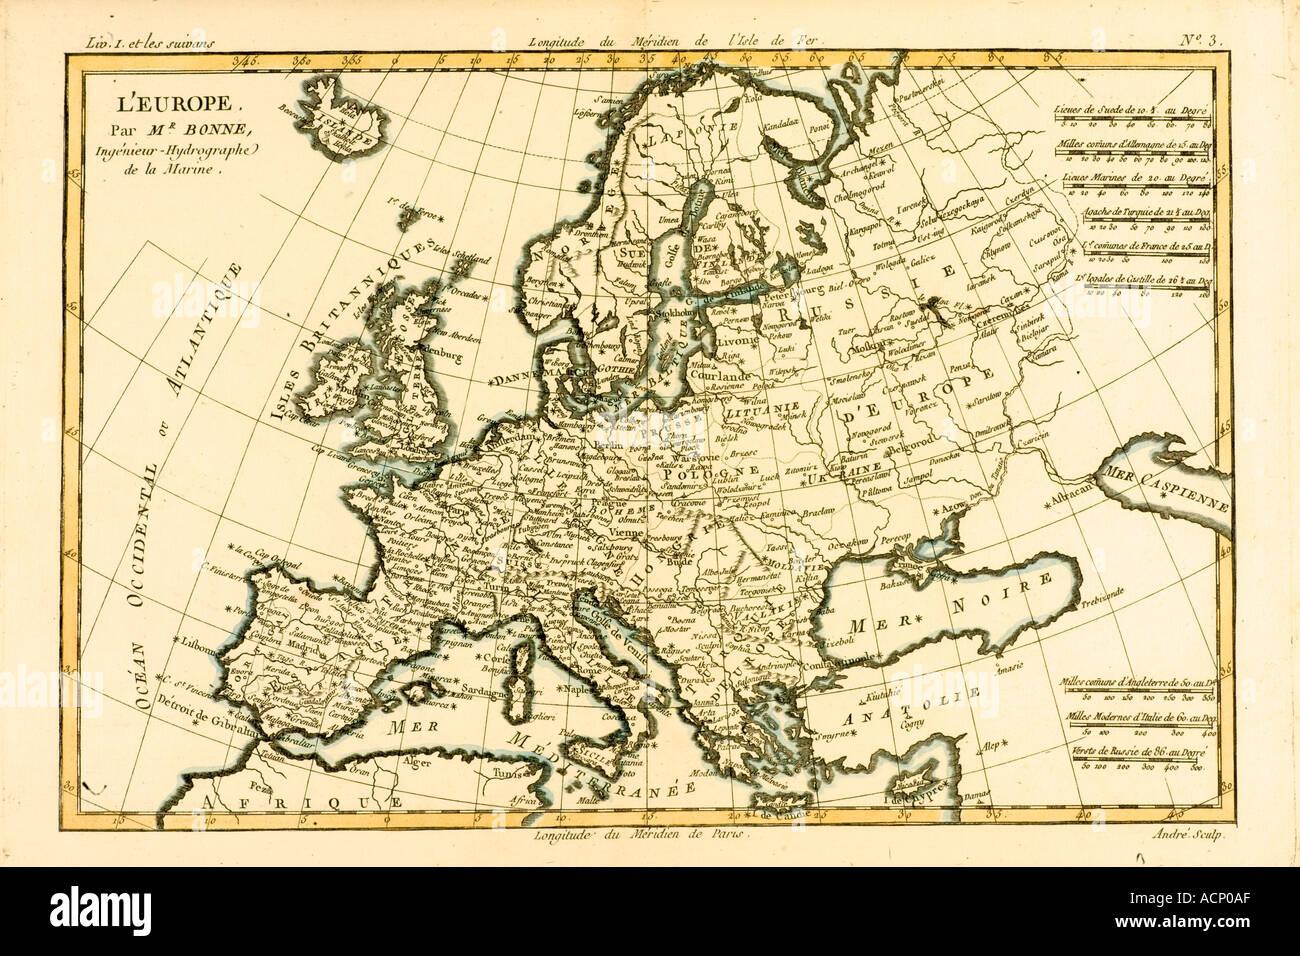 Carte de l'Europe vers 1760. D'Atlas de toutes les parties connues du globe terrestre par Rigobert Bonne Cartographe Banque D'Images